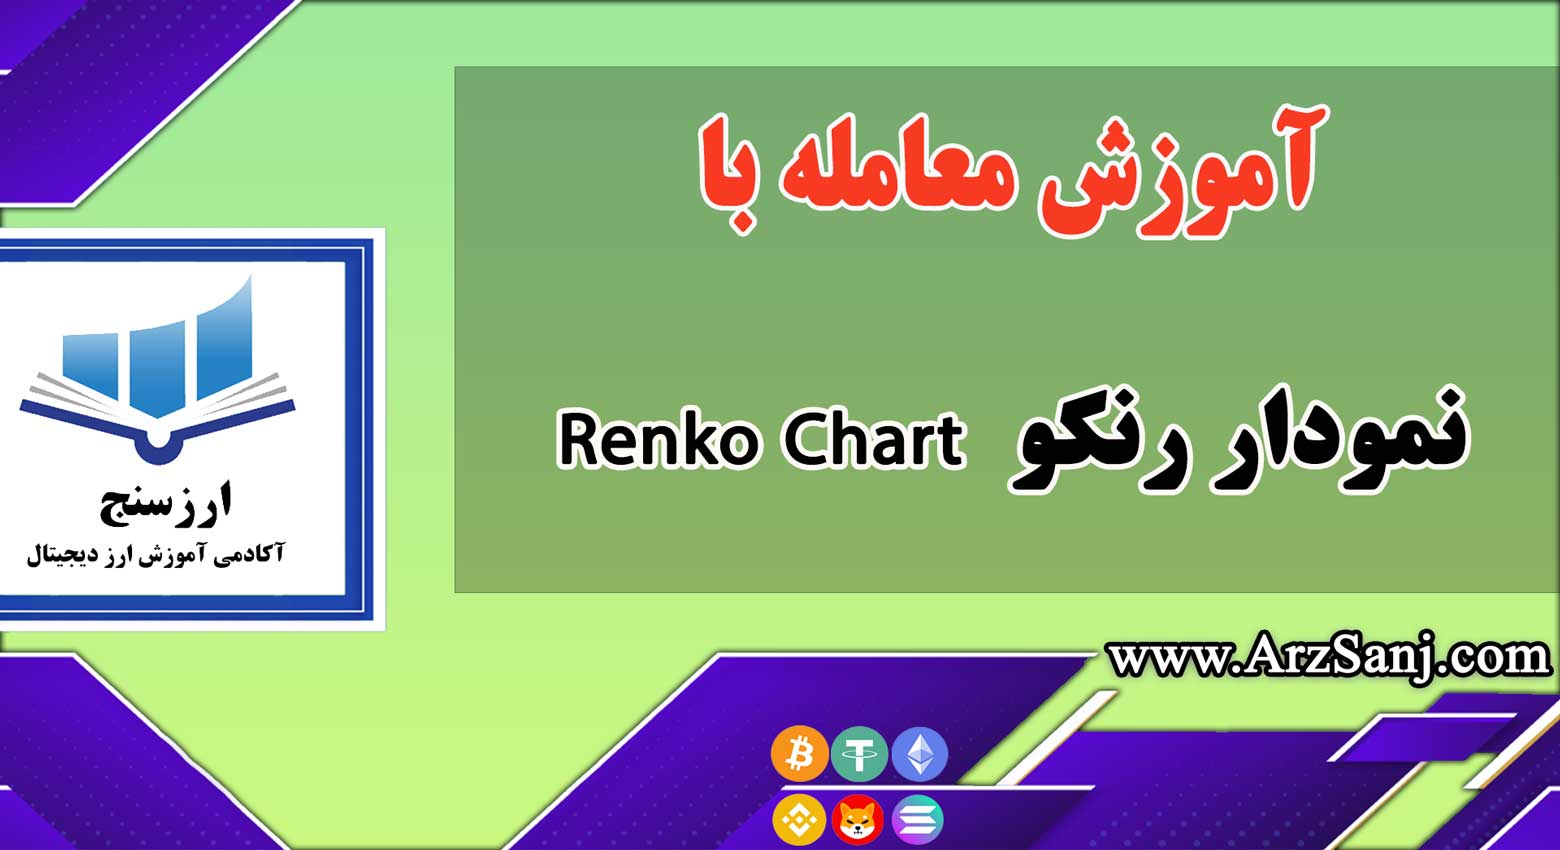 نمودار رنکو چیست؟ آموزش معامله با Renko Chart